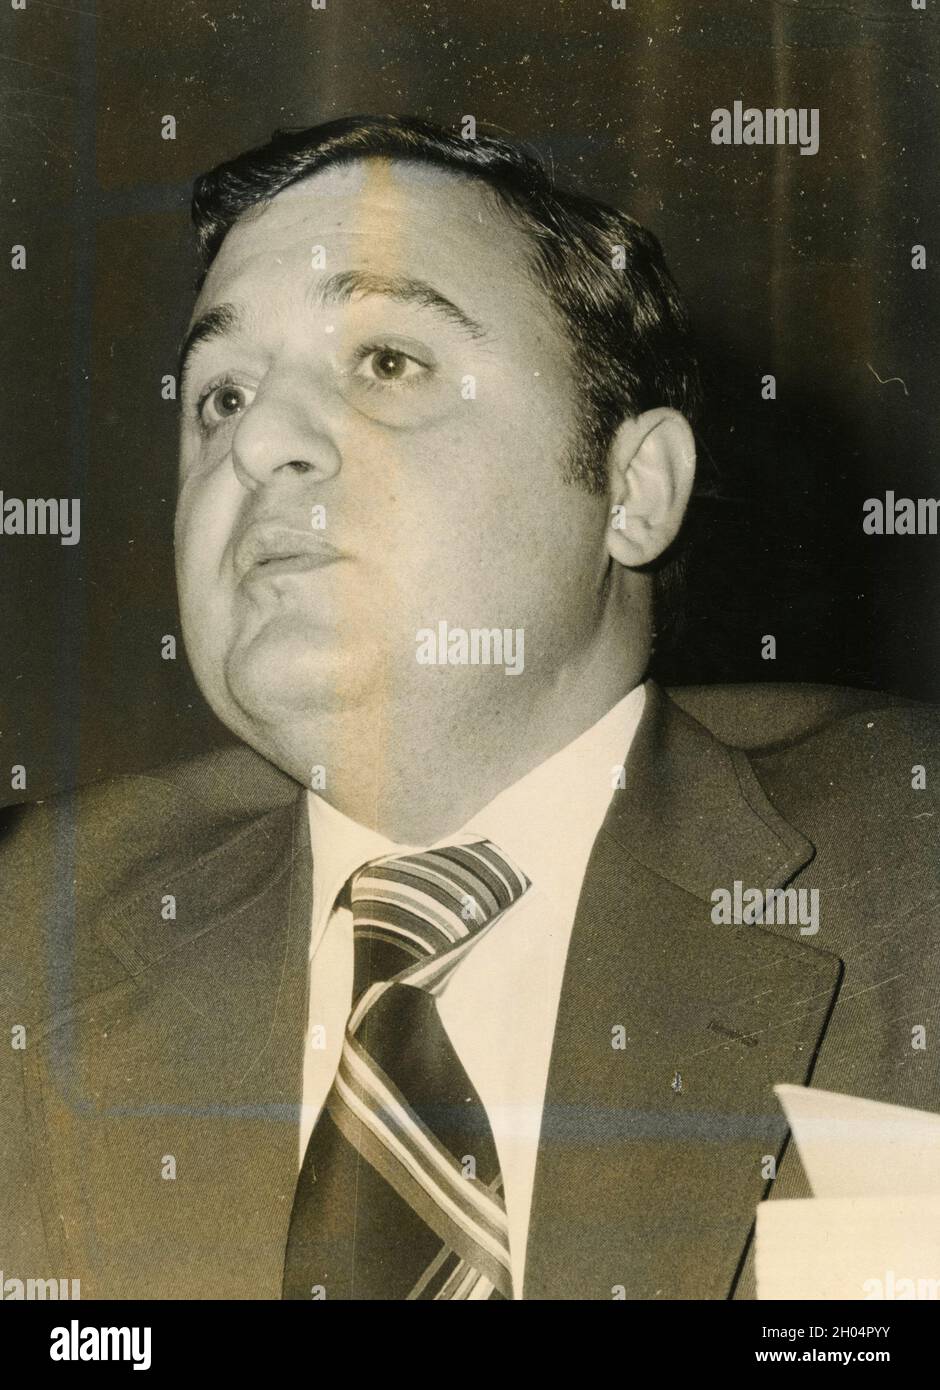 Homme politique italien Paolo Savona, années 1970 Banque D'Images